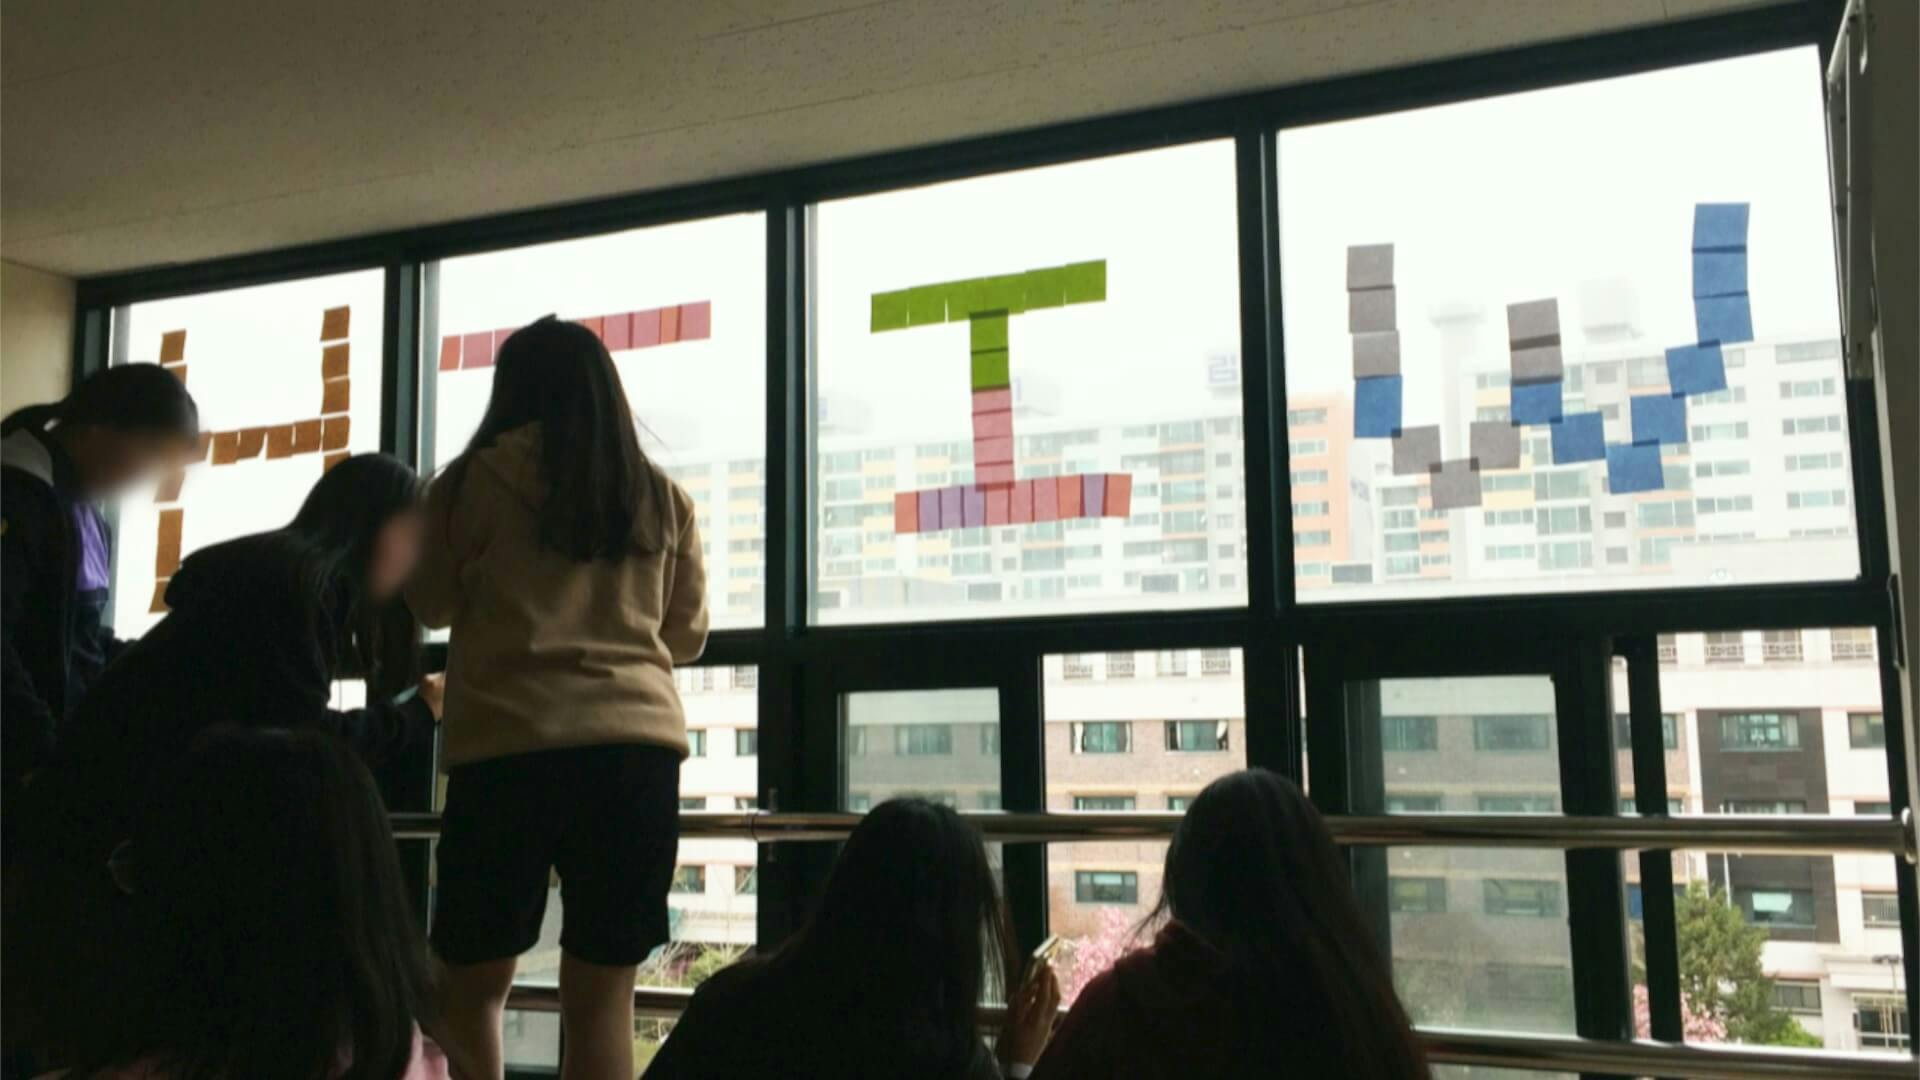 2018년 4월 6일, 용화여자고등학교 재학생들이 창문에 포스트잇으로 'WITH YOU' 문구를 붙이는 모습(ⓒ용화여고 페이스북)